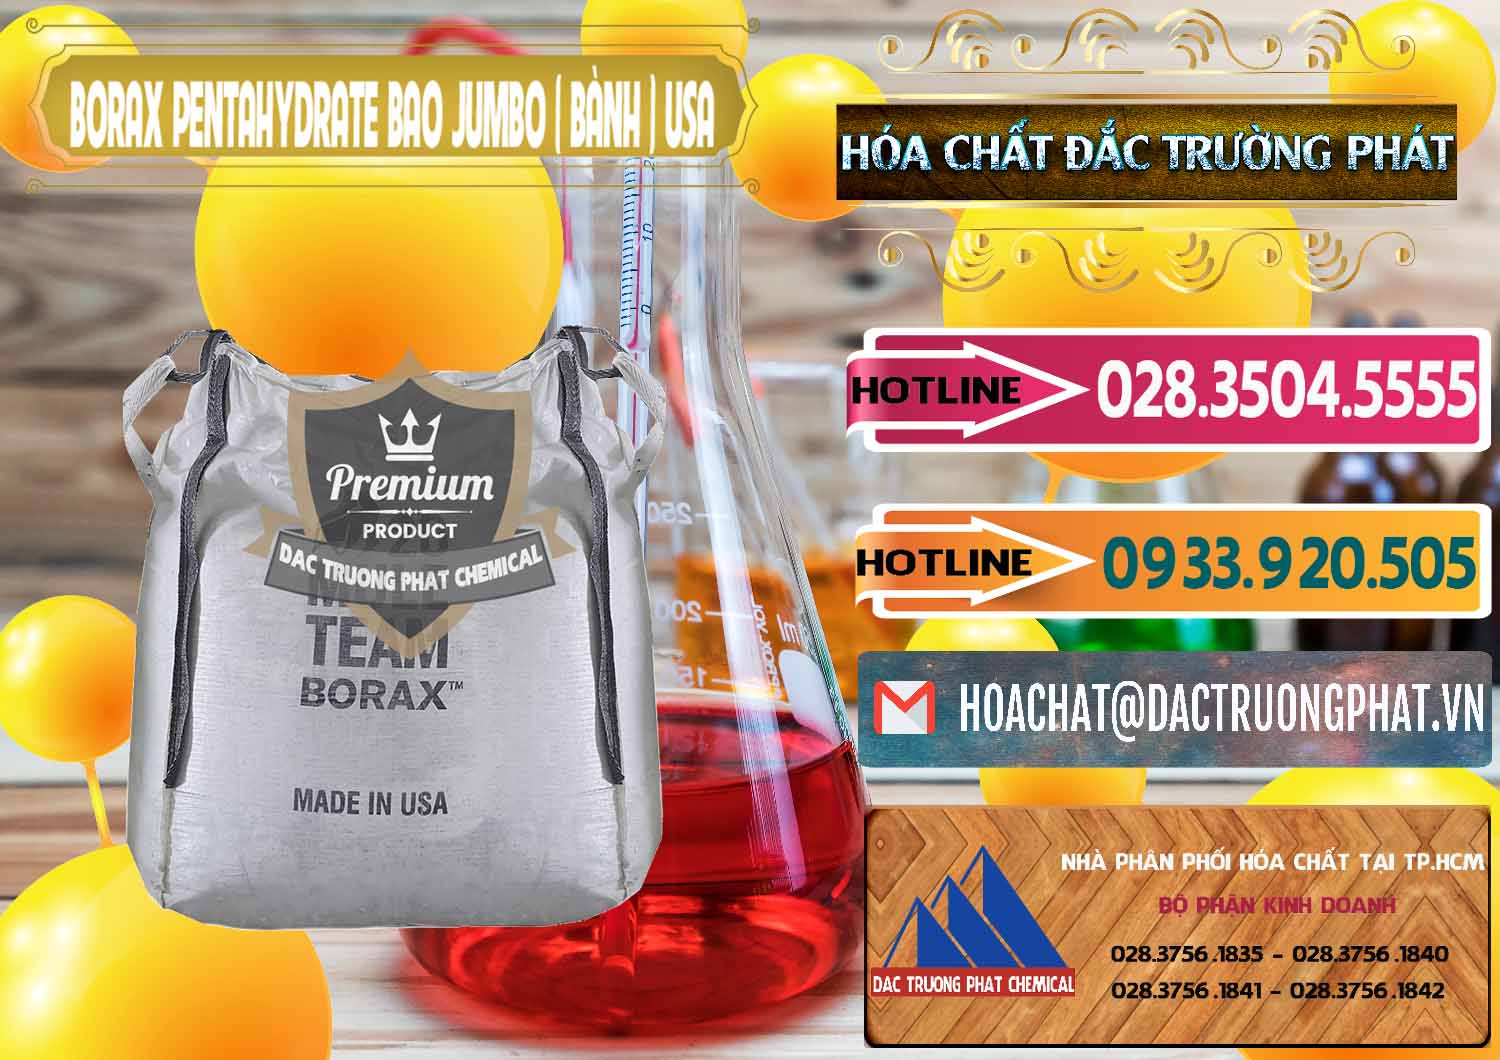 Chuyên cung cấp & bán Borax Pentahydrate Bao Jumbo ( Bành ) Mule 20 Team Mỹ Usa - 0278 - Cty cung cấp _ phân phối hóa chất tại TP.HCM - dactruongphat.vn